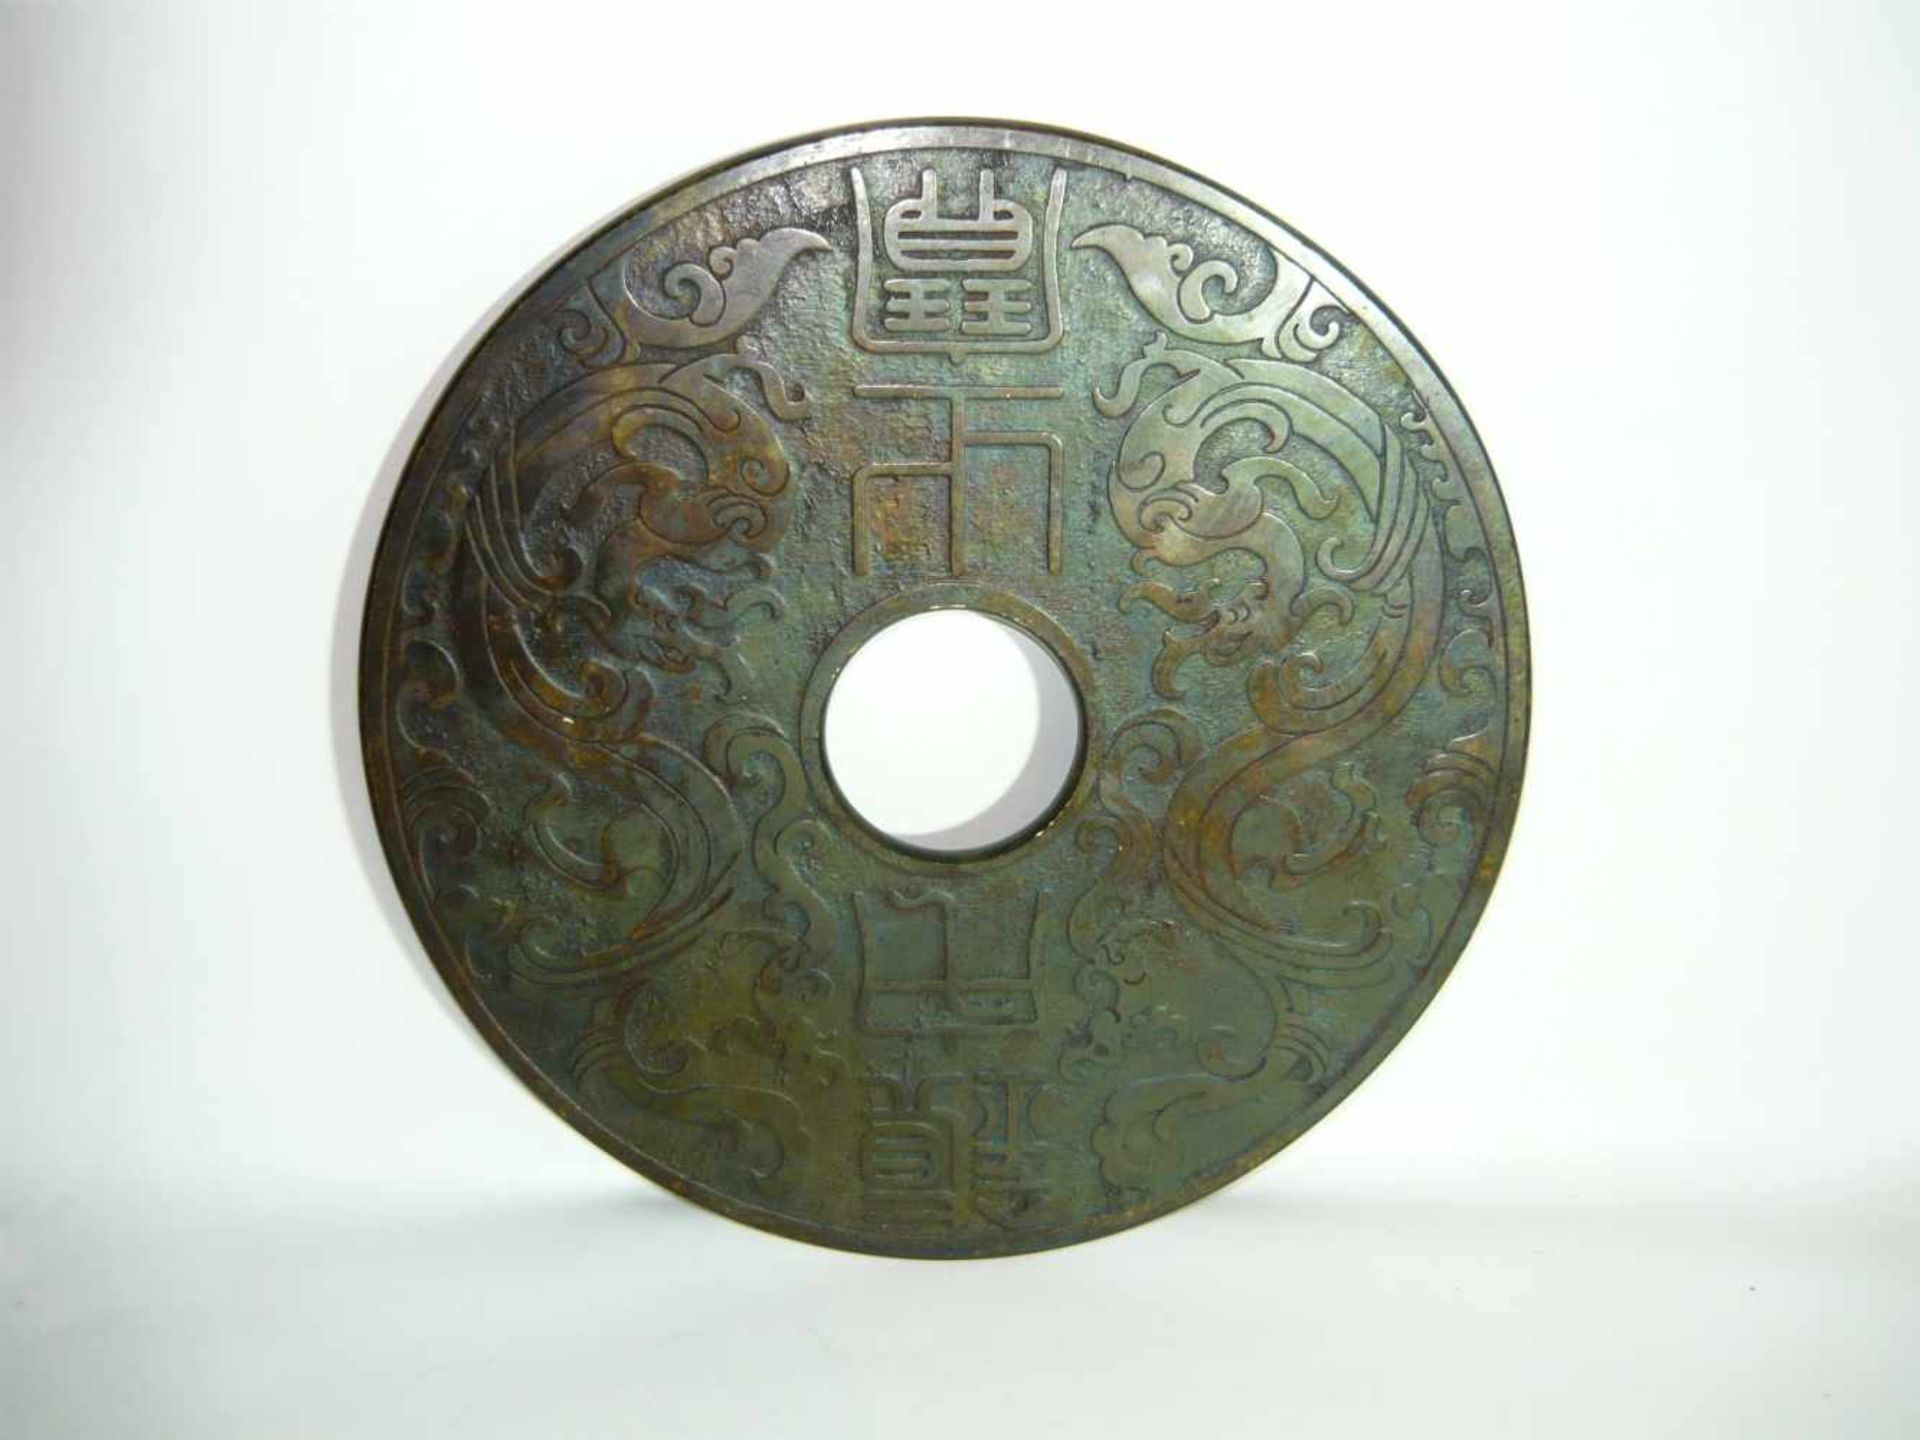 Große Jadescheibe mit Loch. Chinesische Schriftzeichen. Ca. 31cm.- - -22.00 % buyer's premium on the